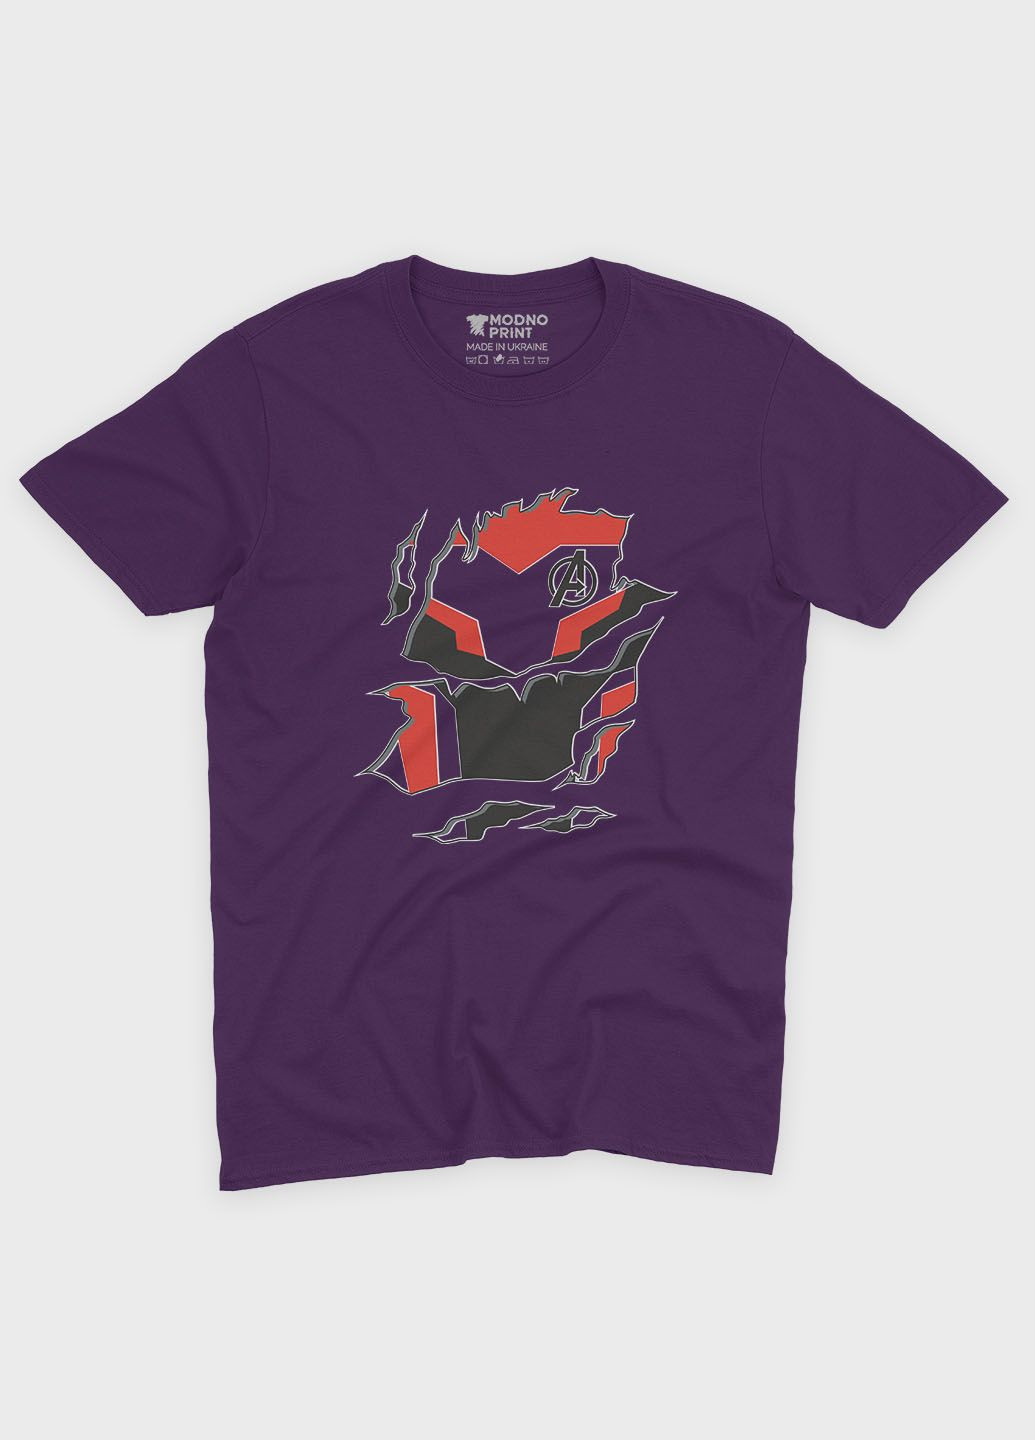 Фіолетова демісезонна футболка для хлопчика з принтом супергероя - залізна людина (ts001-1-dby-006-016-006-b) Modno